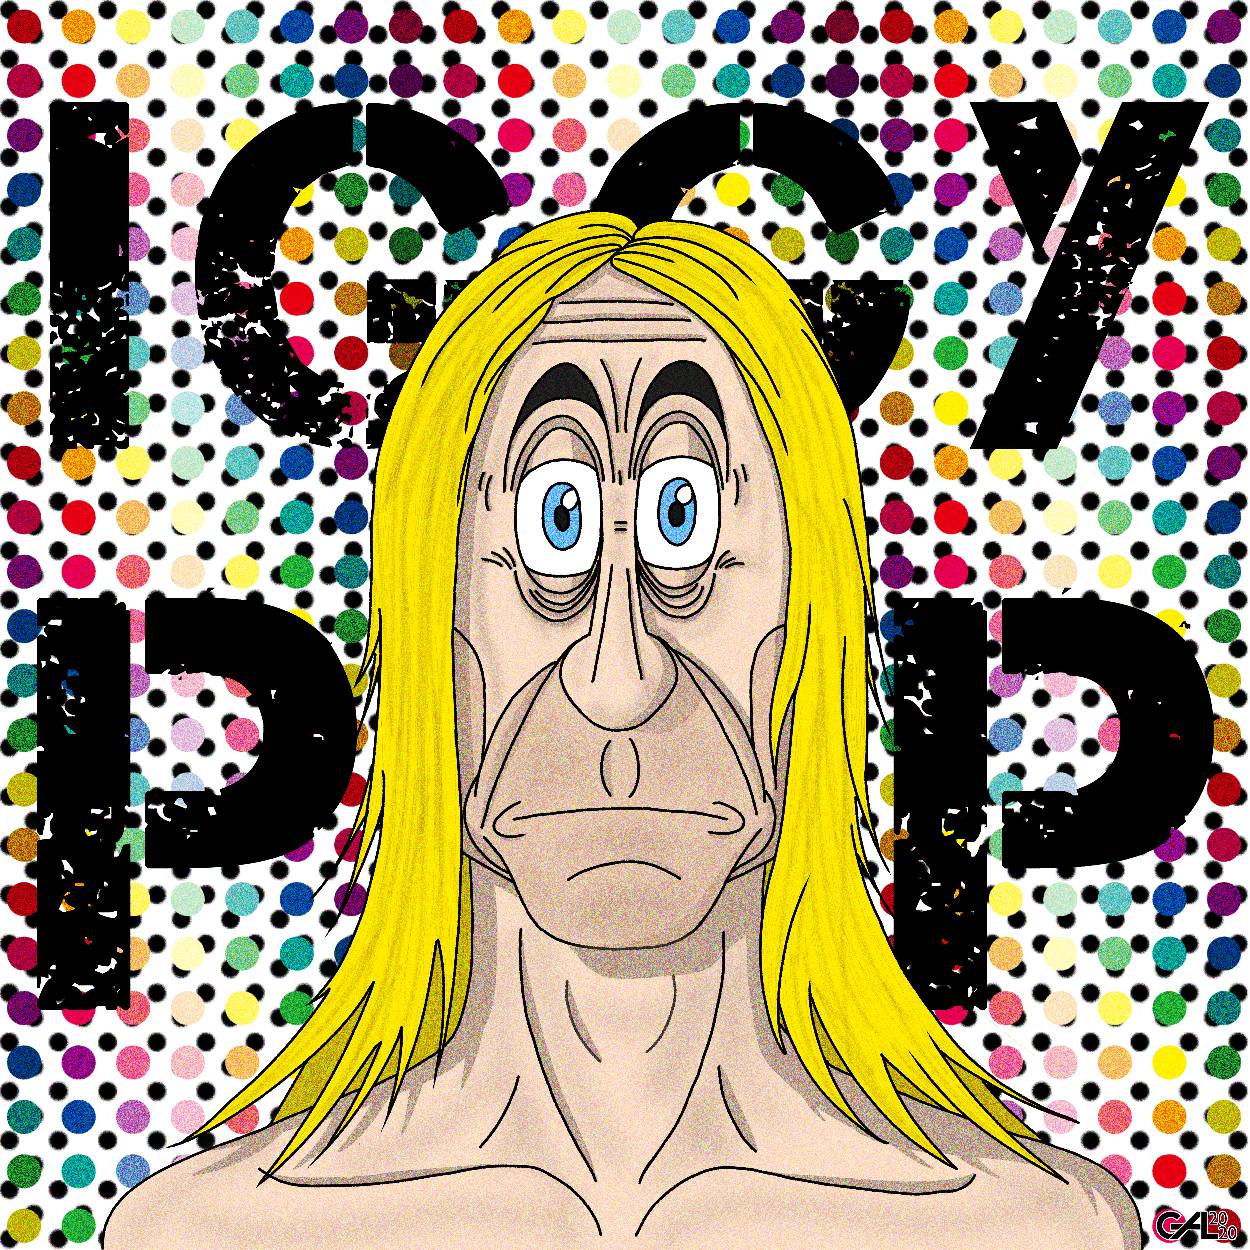 IGGY POP TOON by MrGAL on DeviantArt